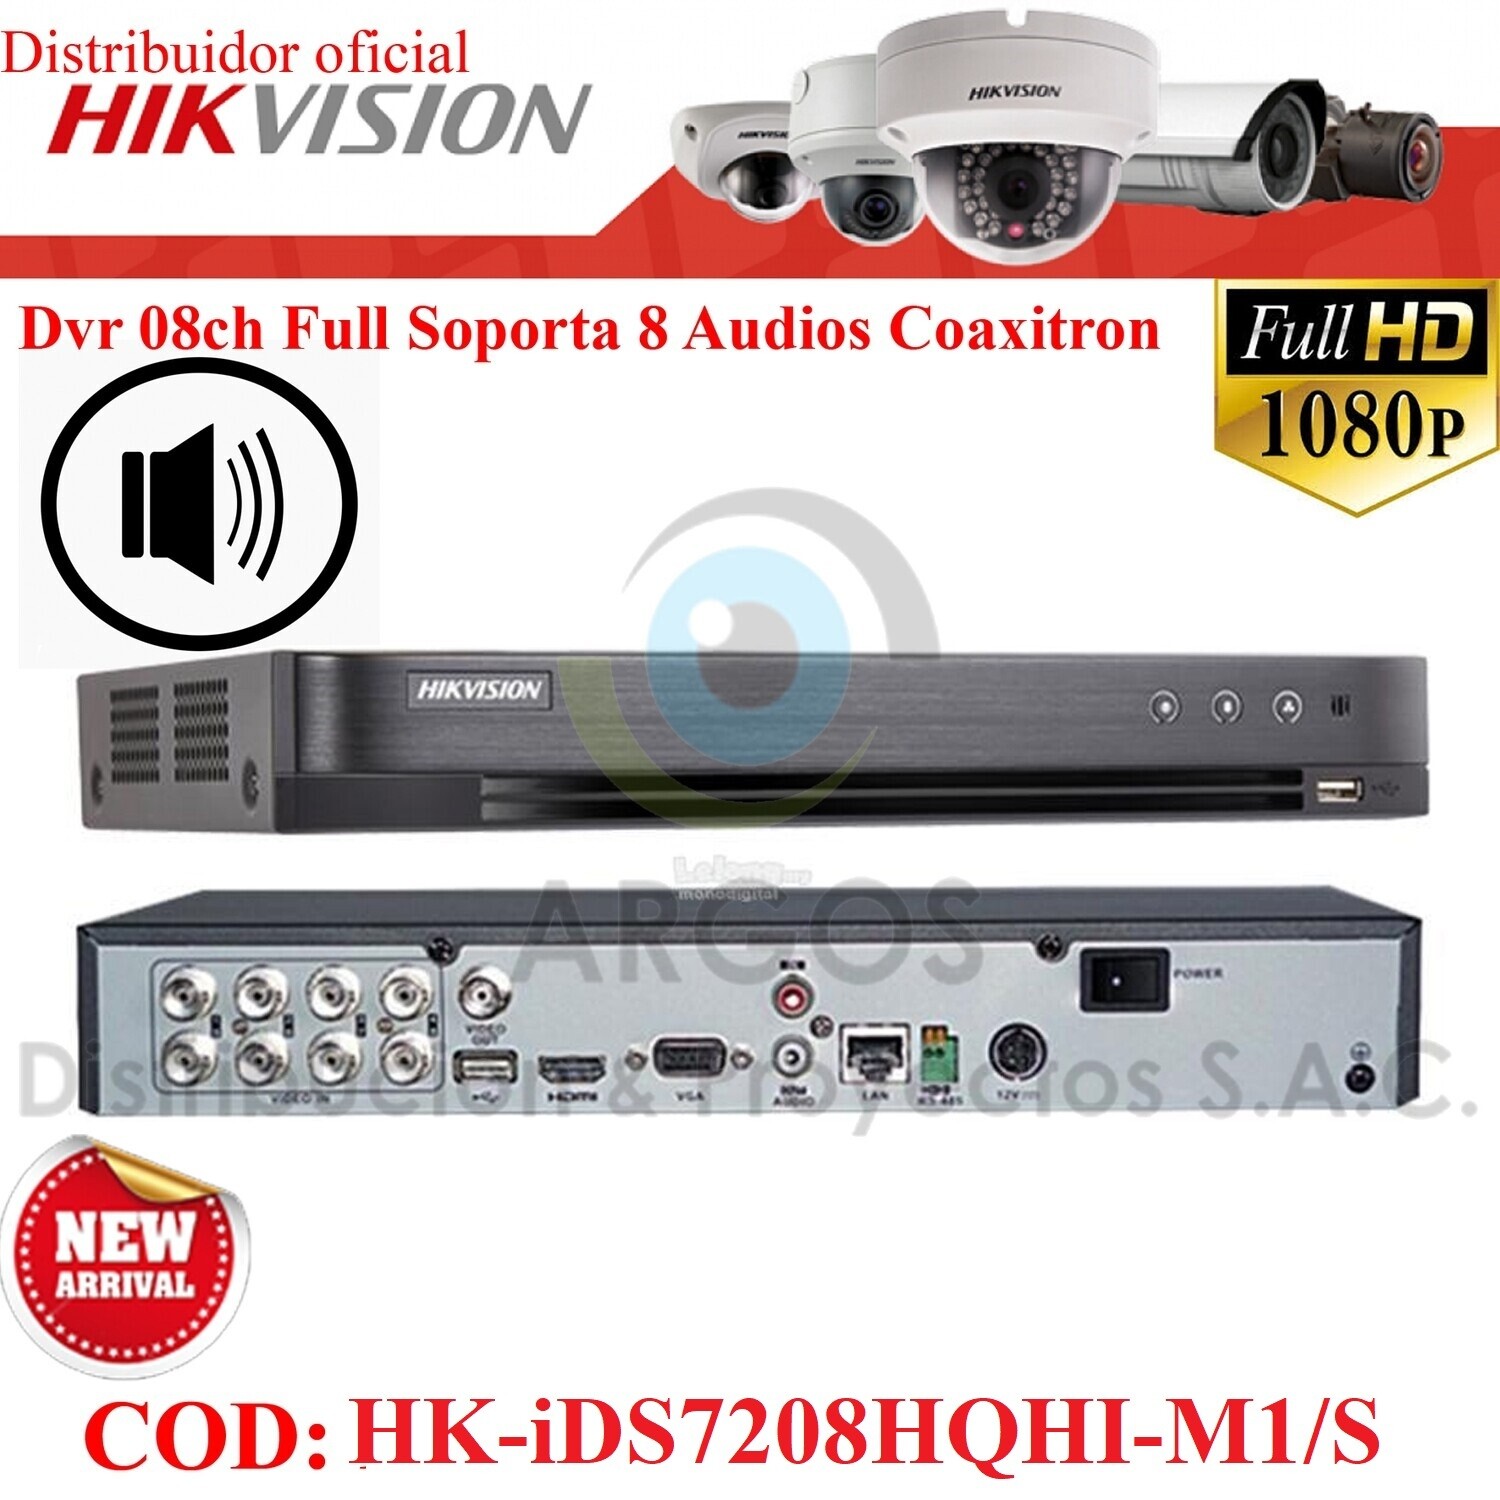 ¡Nuevo! DVR 08CH FULL HD 1080P | SOPORTA 8 CAMARAS CON AUDIO | PENTA HIBRIDO | HIKVISION